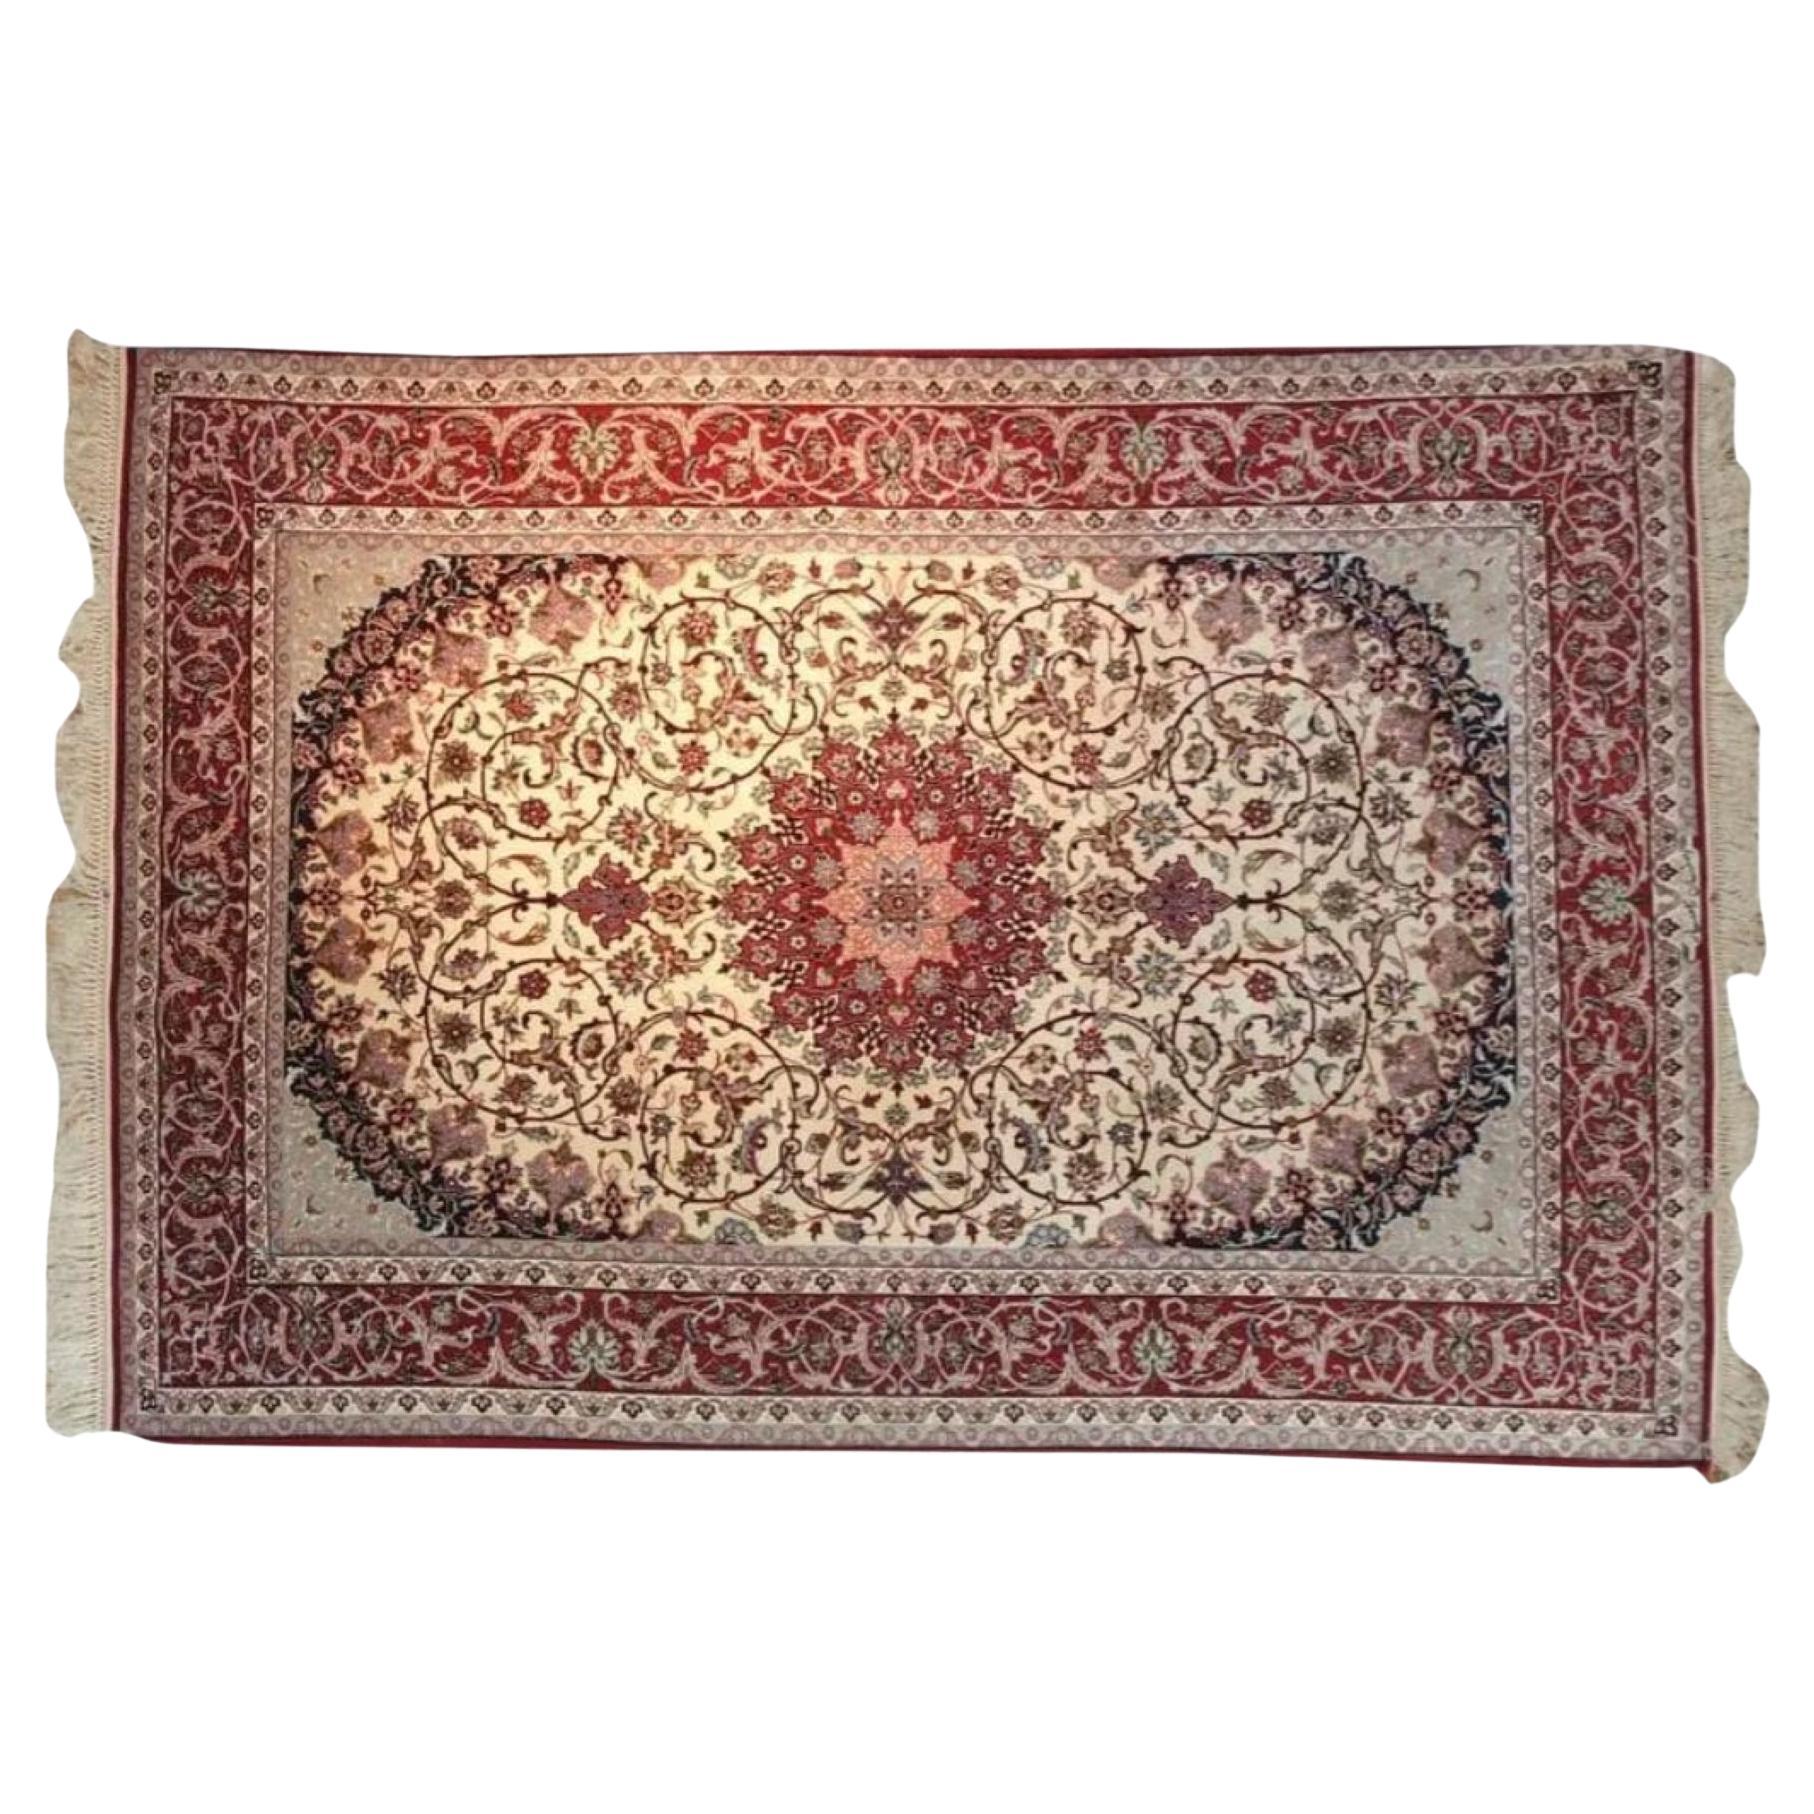 Very fine Persian Silk Ghom - 7.8' x 5.2' For Sale